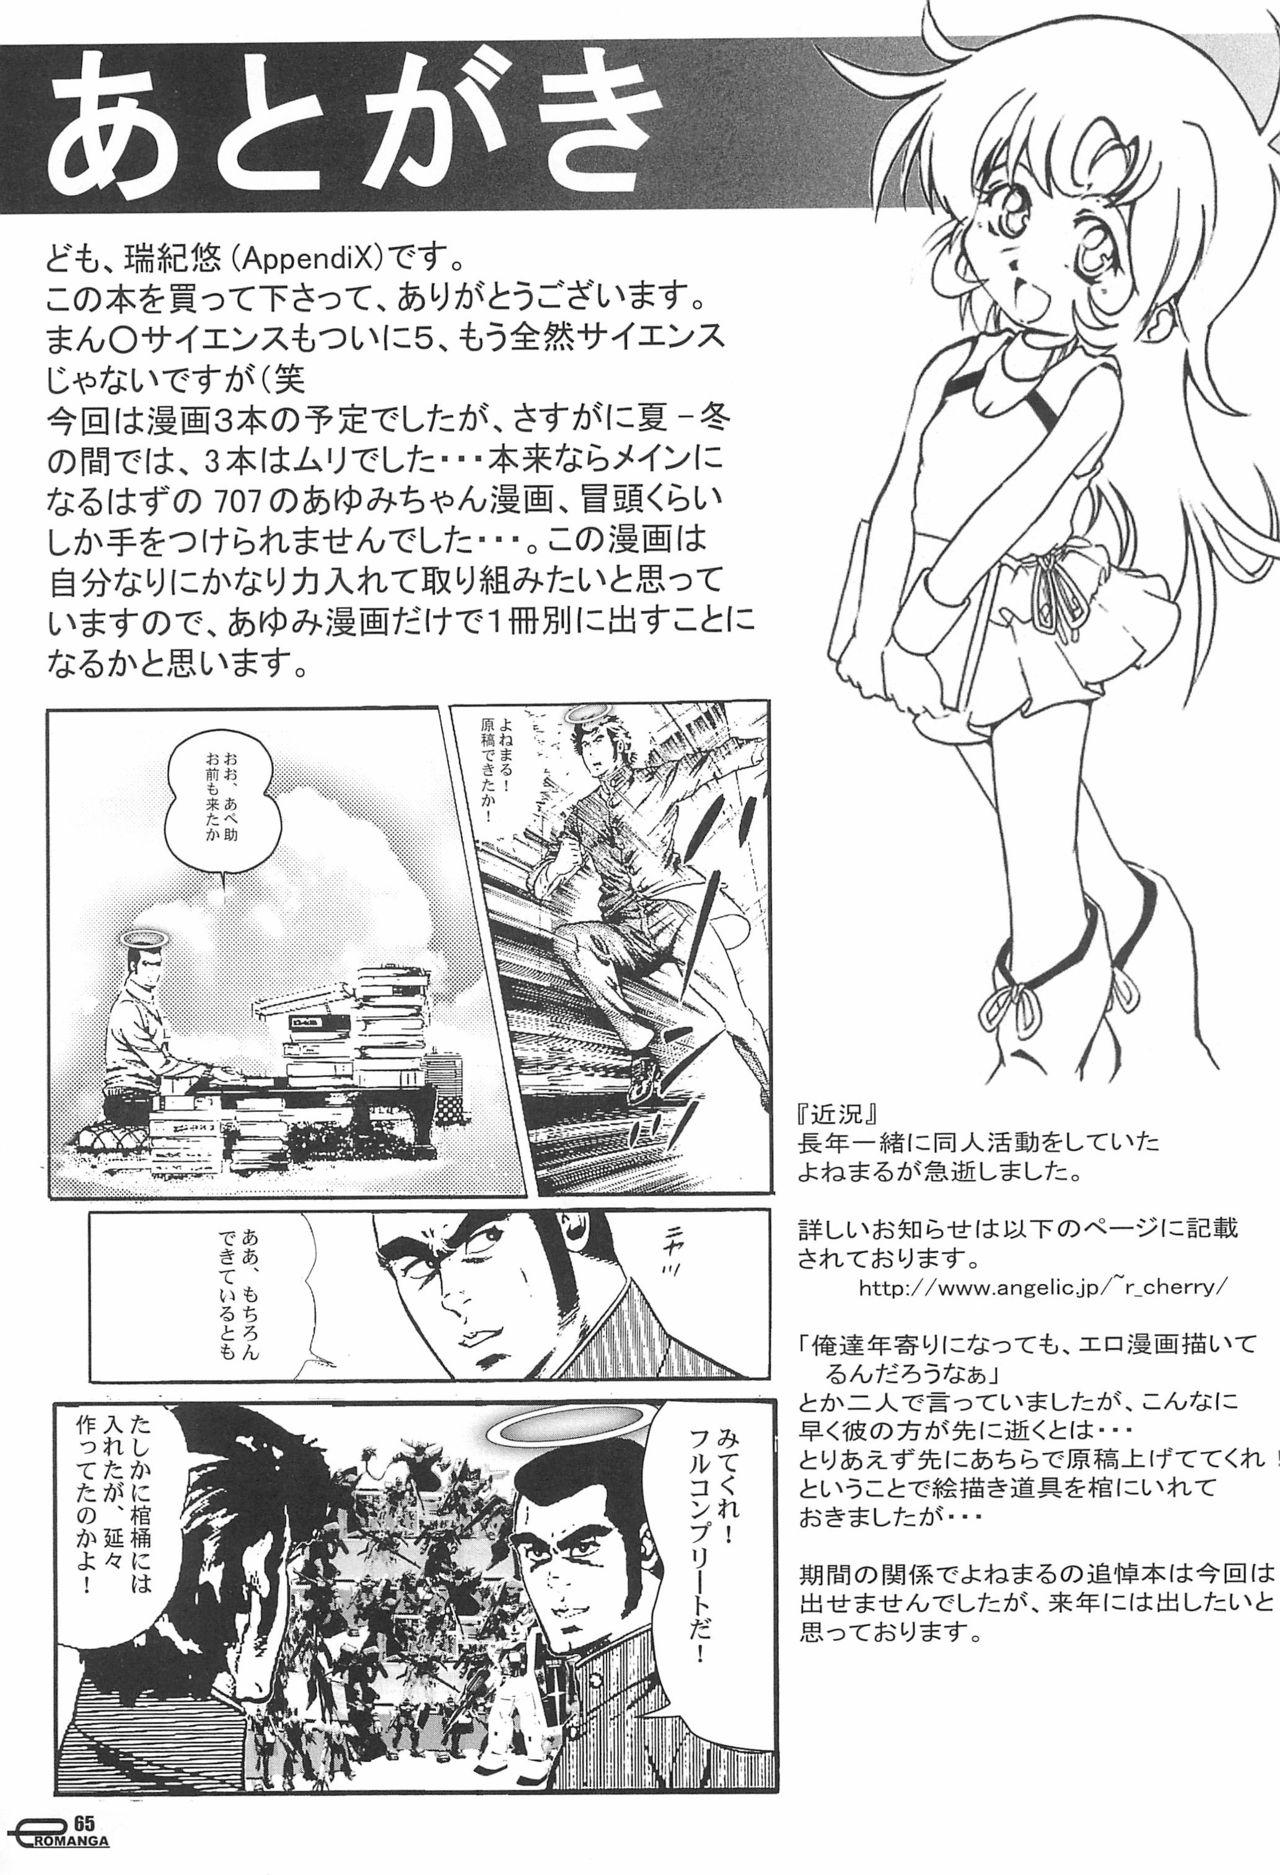 Manga Science 5 64